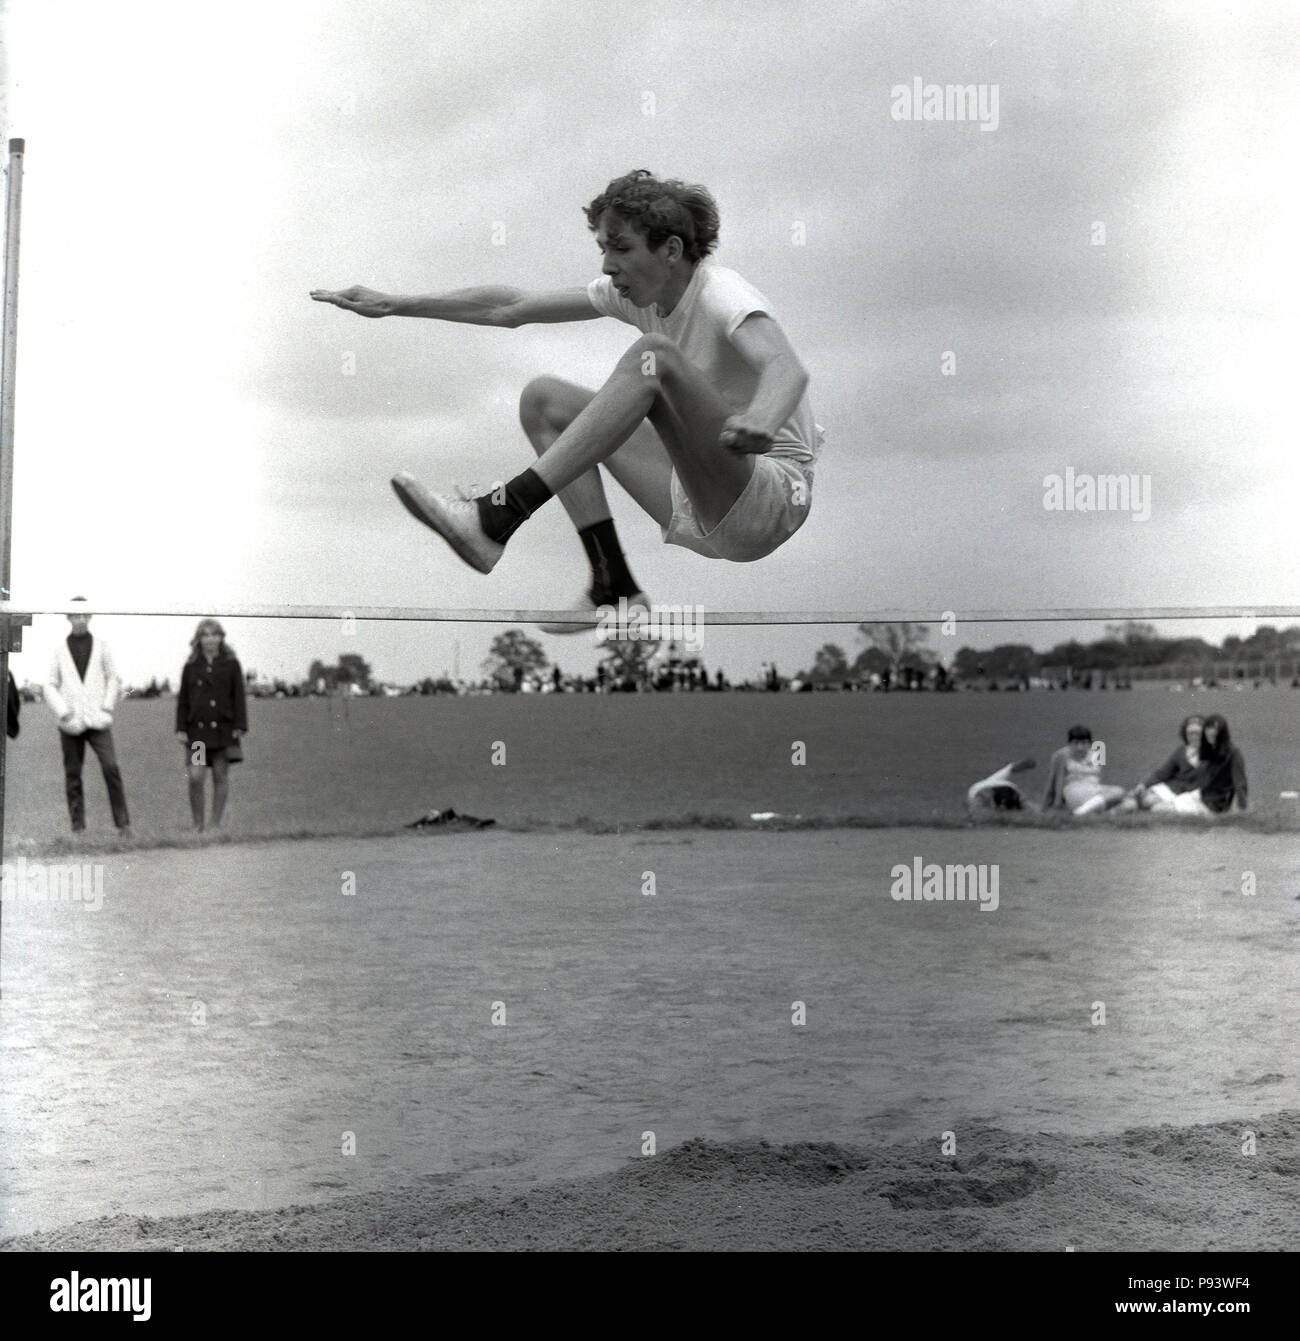 Années 1960, historique, à la mi-air, un jeune garçon sautant ou sauter par dessus une barre du saut en hauteur dans une école des sports jour, England, UK. Banque D'Images